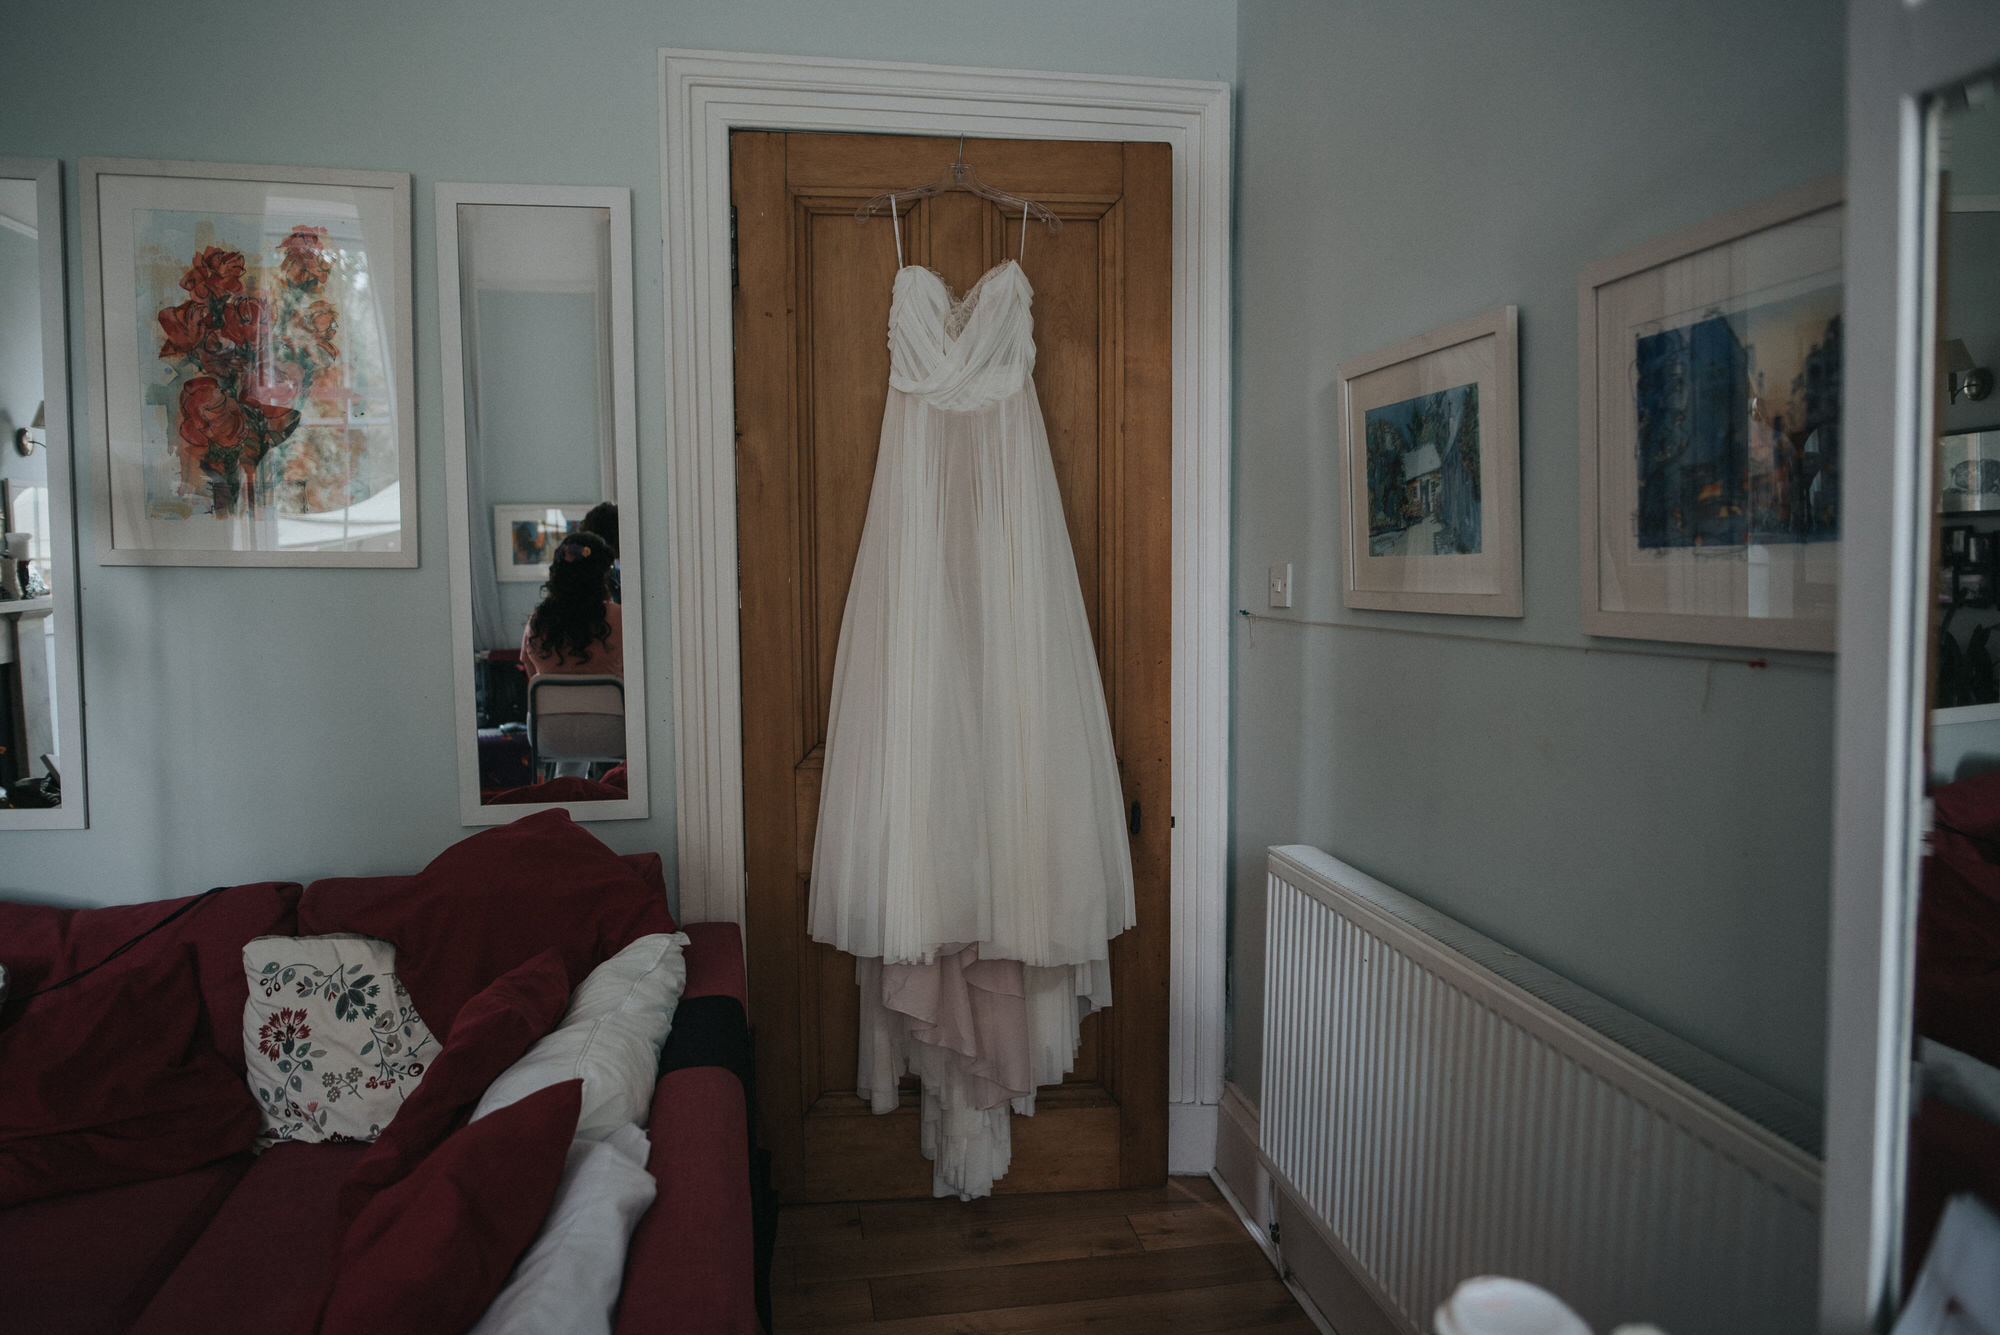 The brides wedding dress hangs over. a door. in her living room